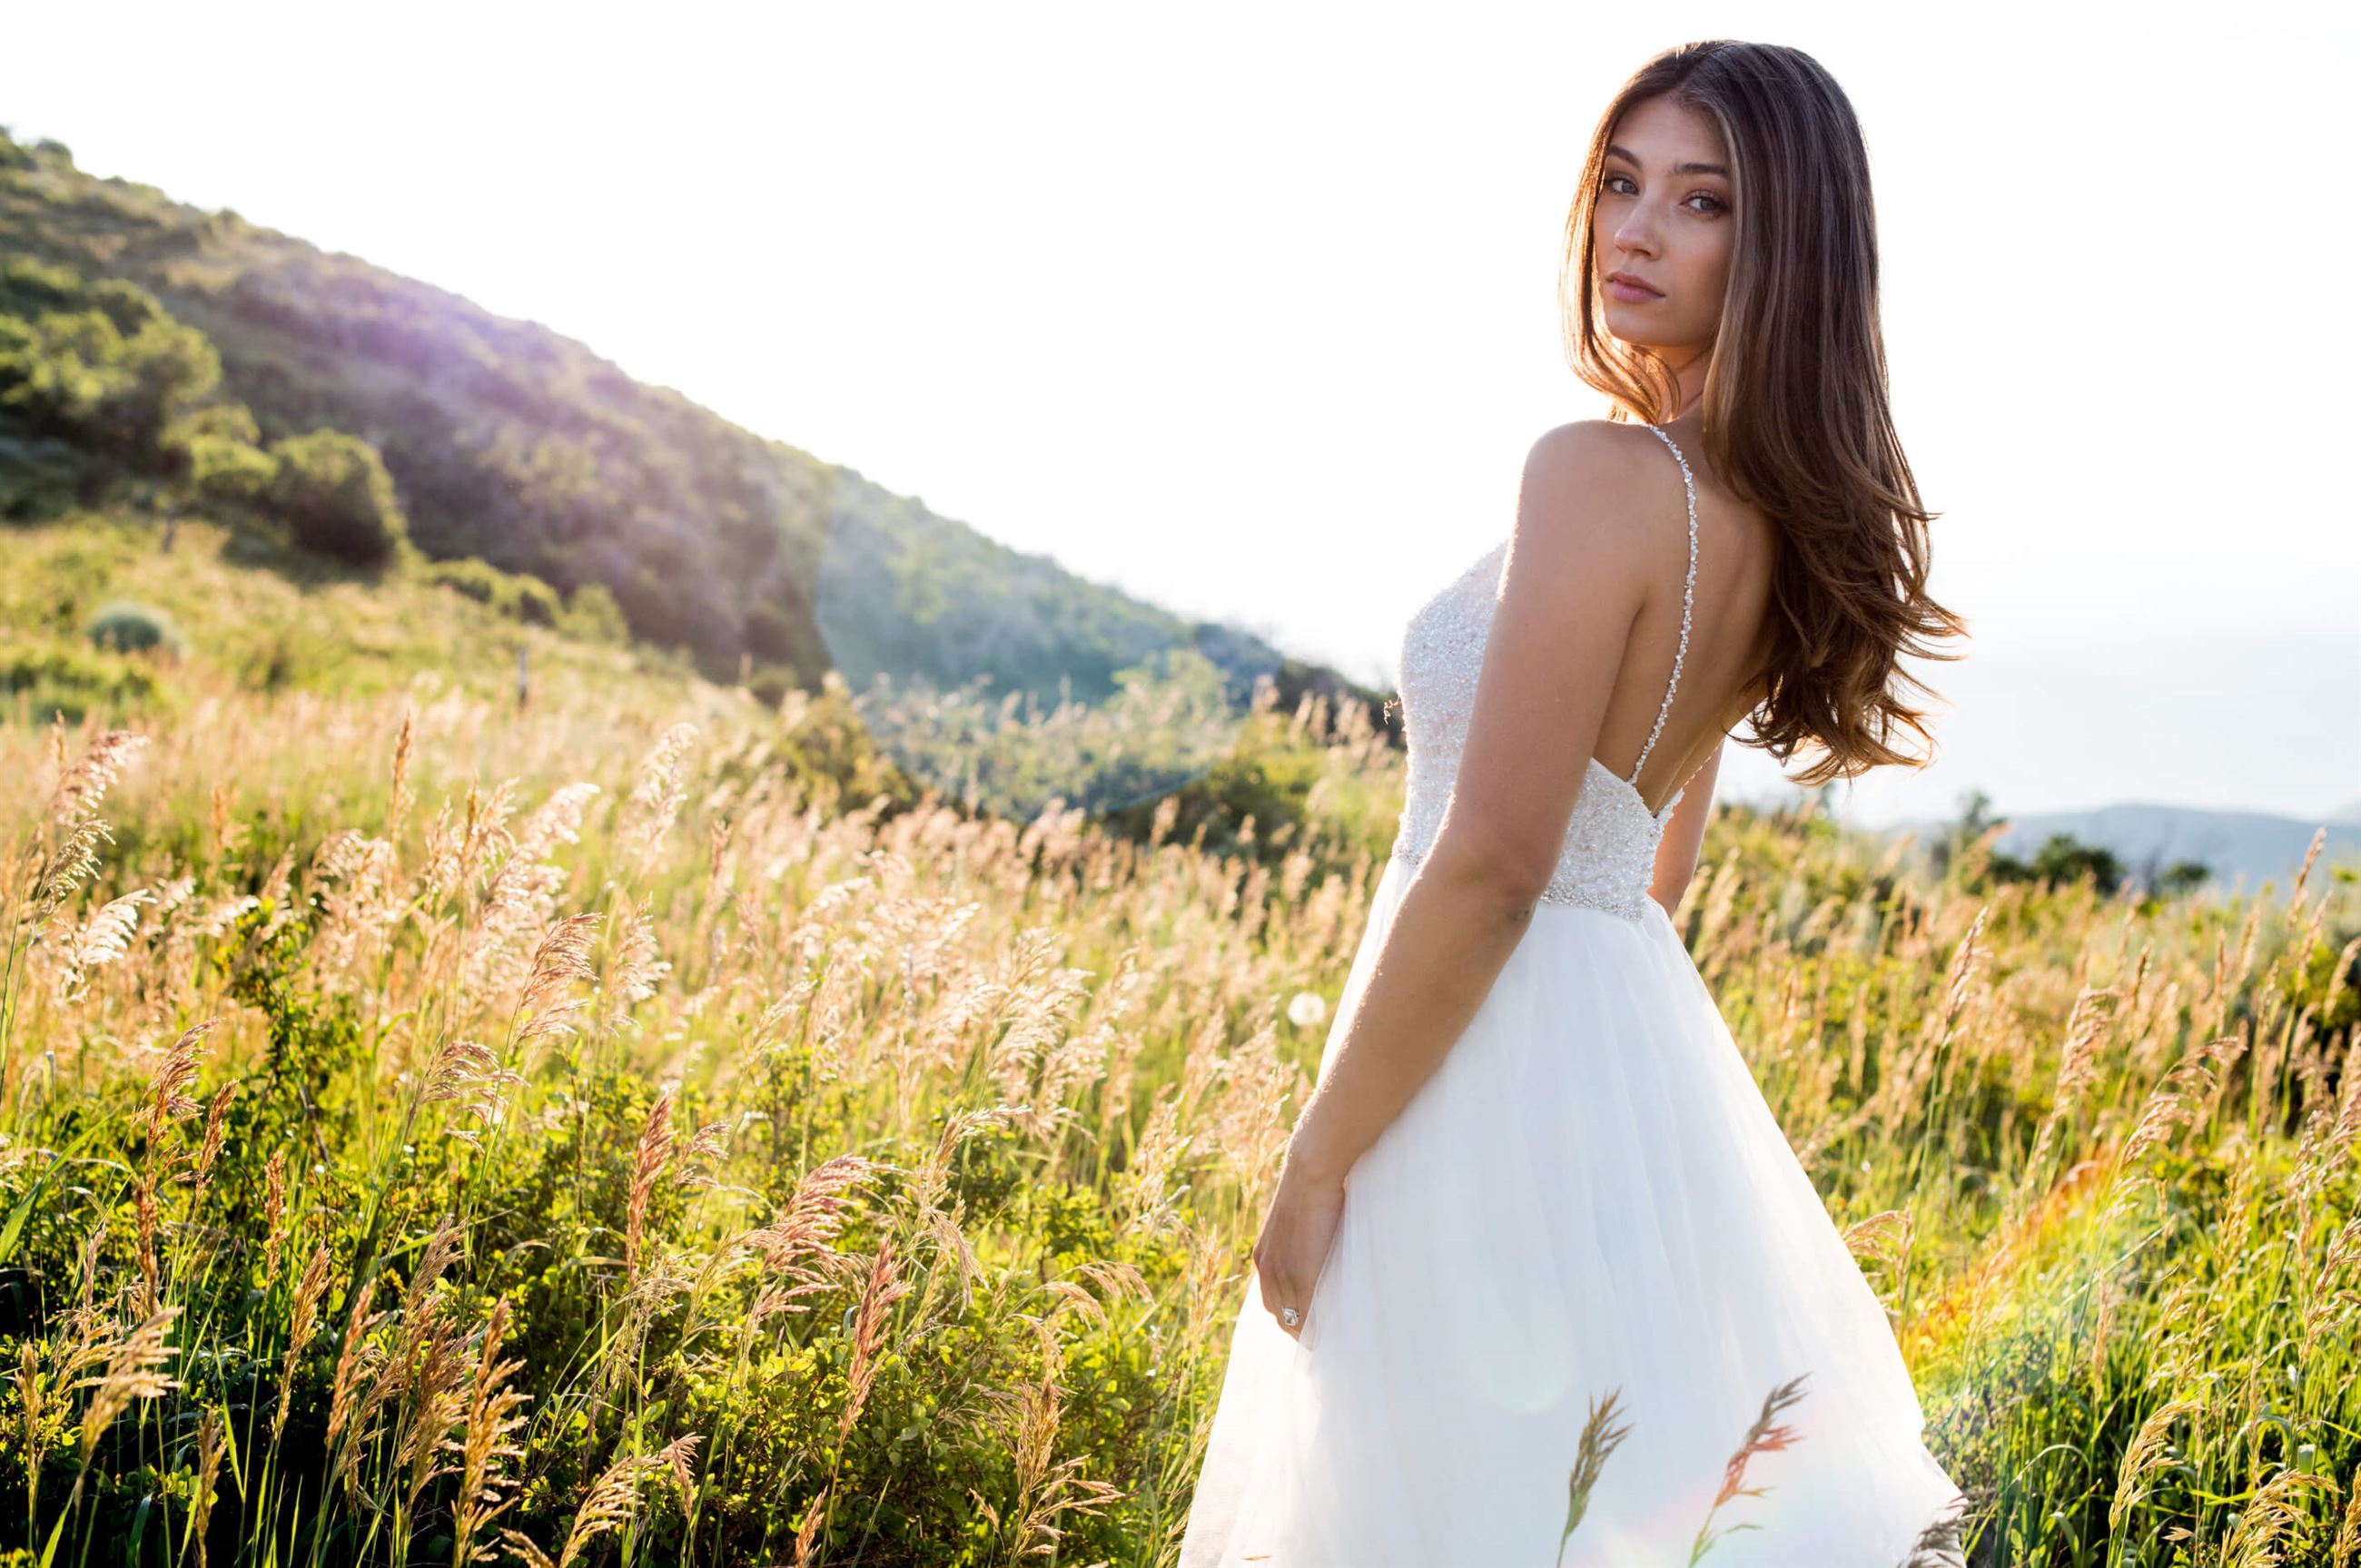 Brunette bride wearing white wedding dress in field